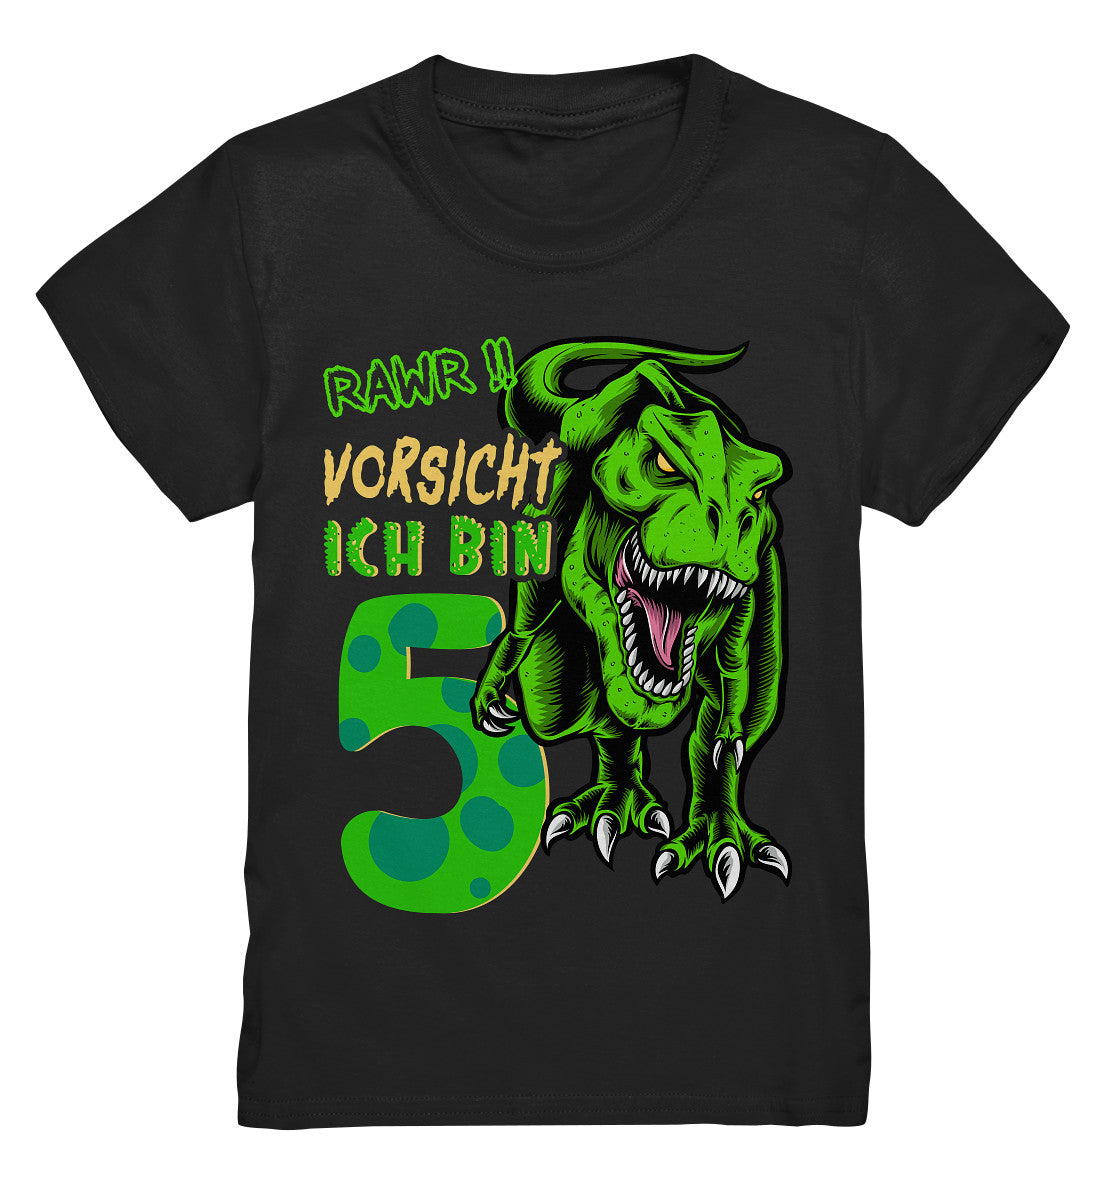 5. Kinder Geburtstag - T-REX Dinosaurier - Ich bin 5 Jahre - Geschenk - Kids Premium Shirt - Kids Premium Shirt